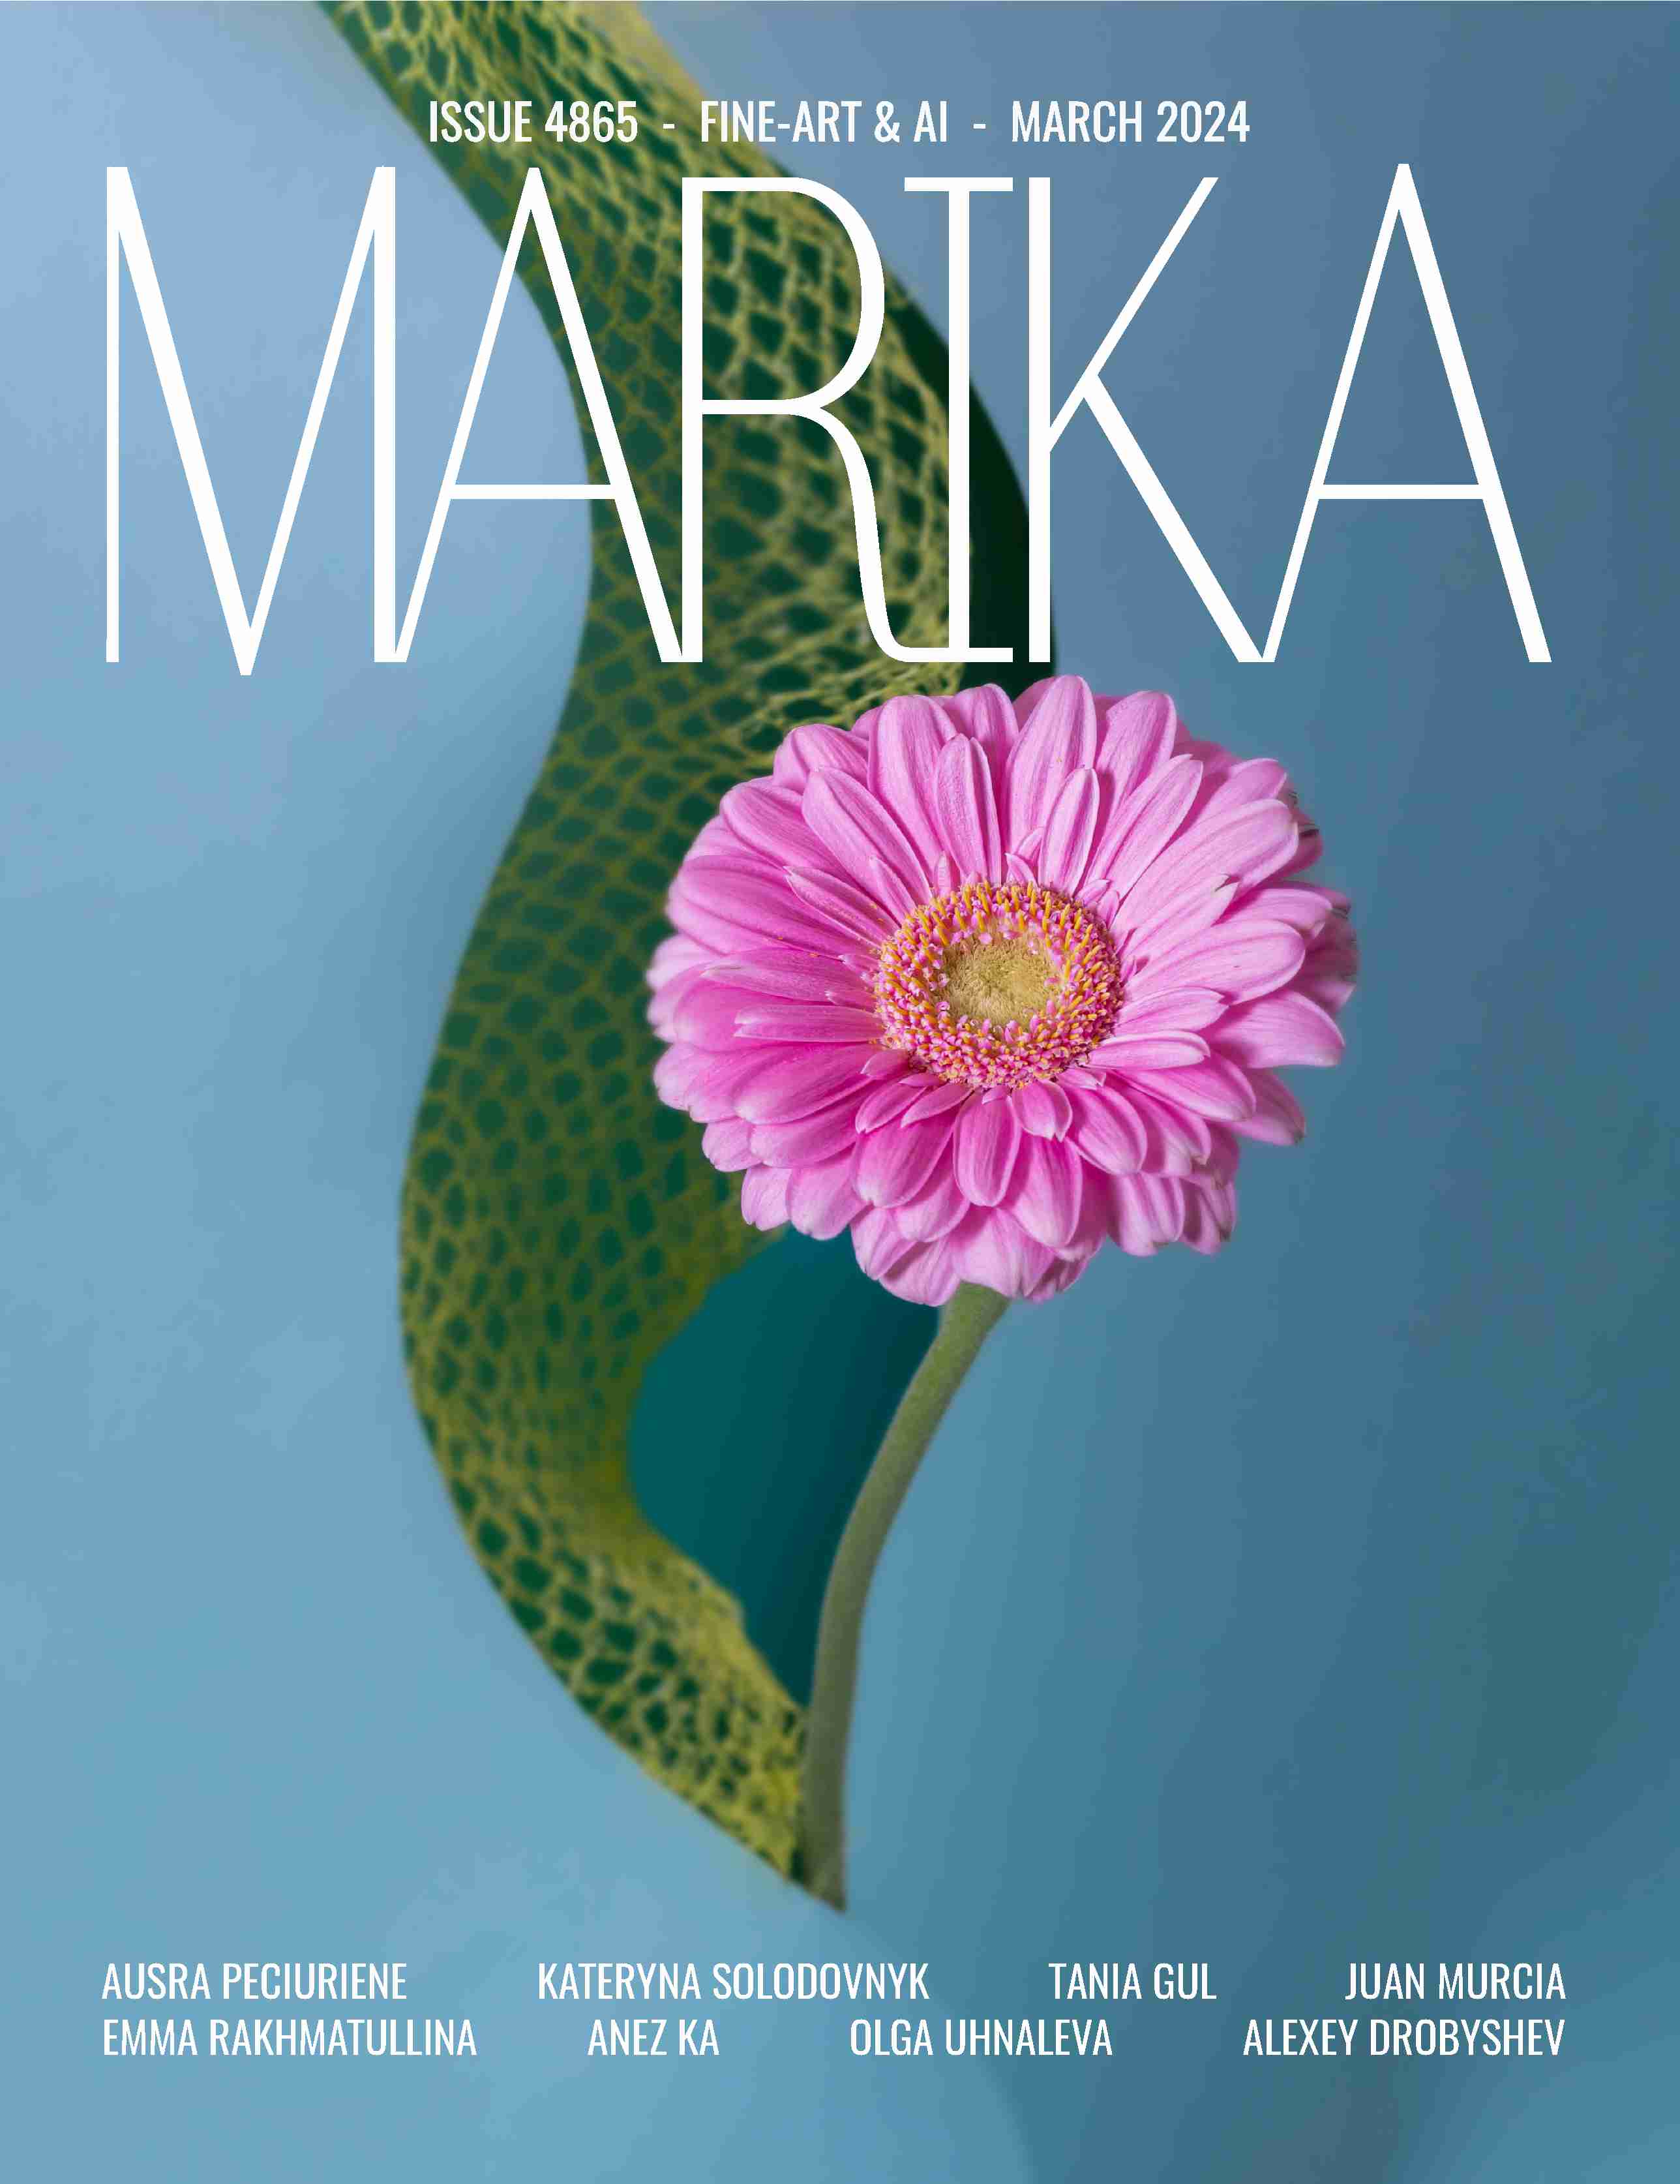 Nikita Collection – Marika Vera